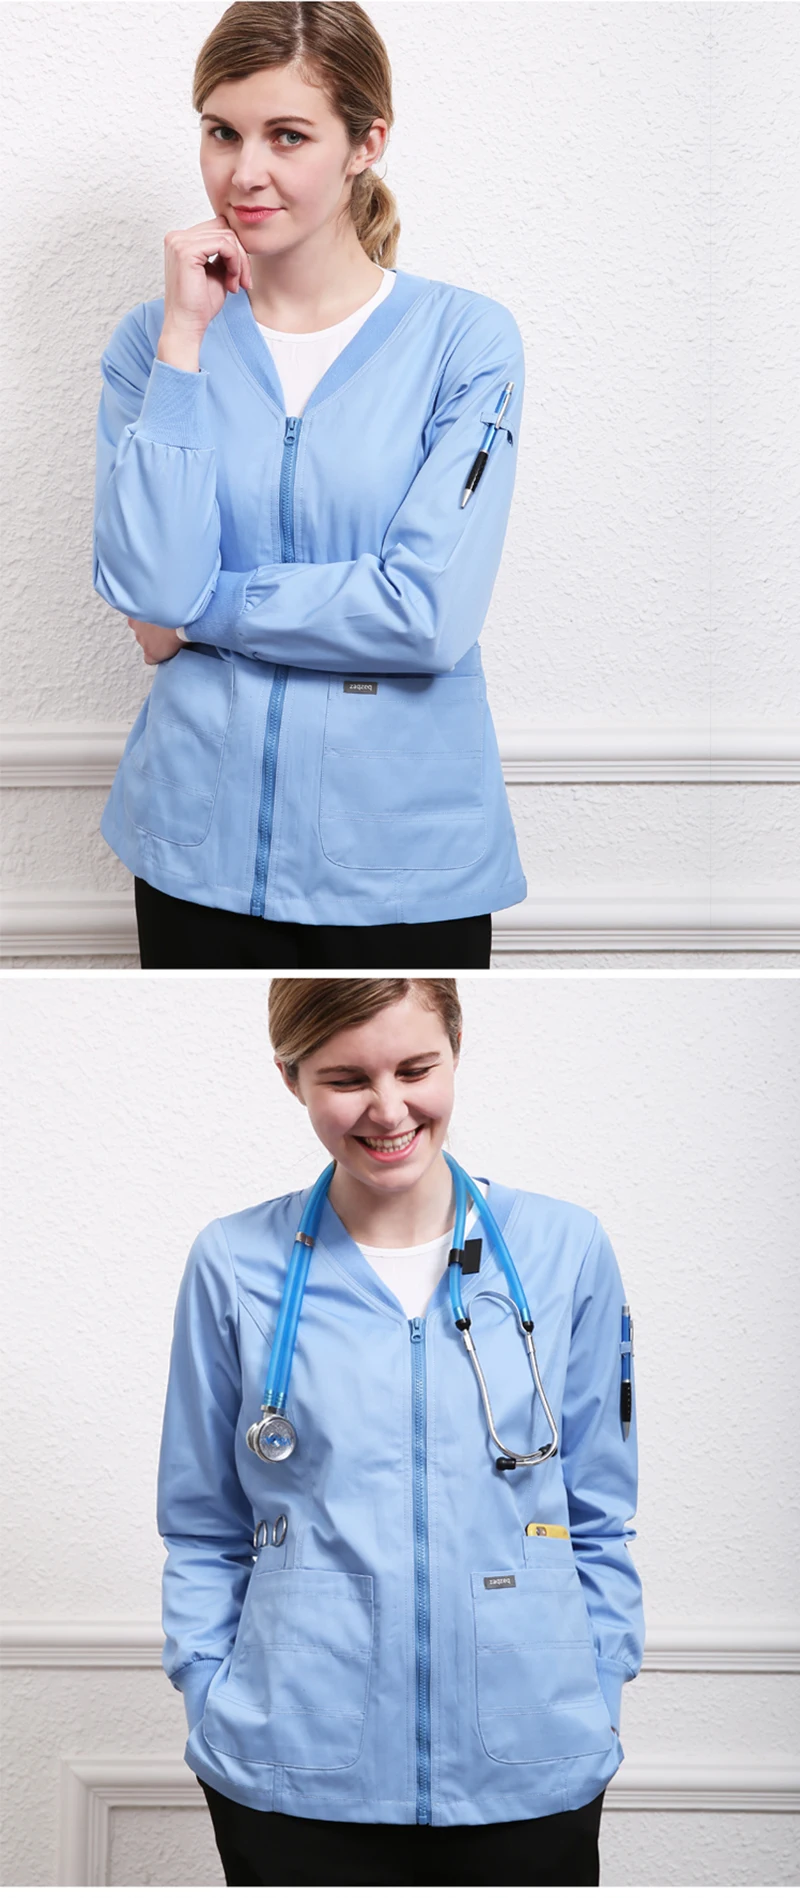 Высококачественное белое лабораторное пальто для женщин на пуговицах, униформа для врача, больница, зубные скрабы, наряд, медицинская